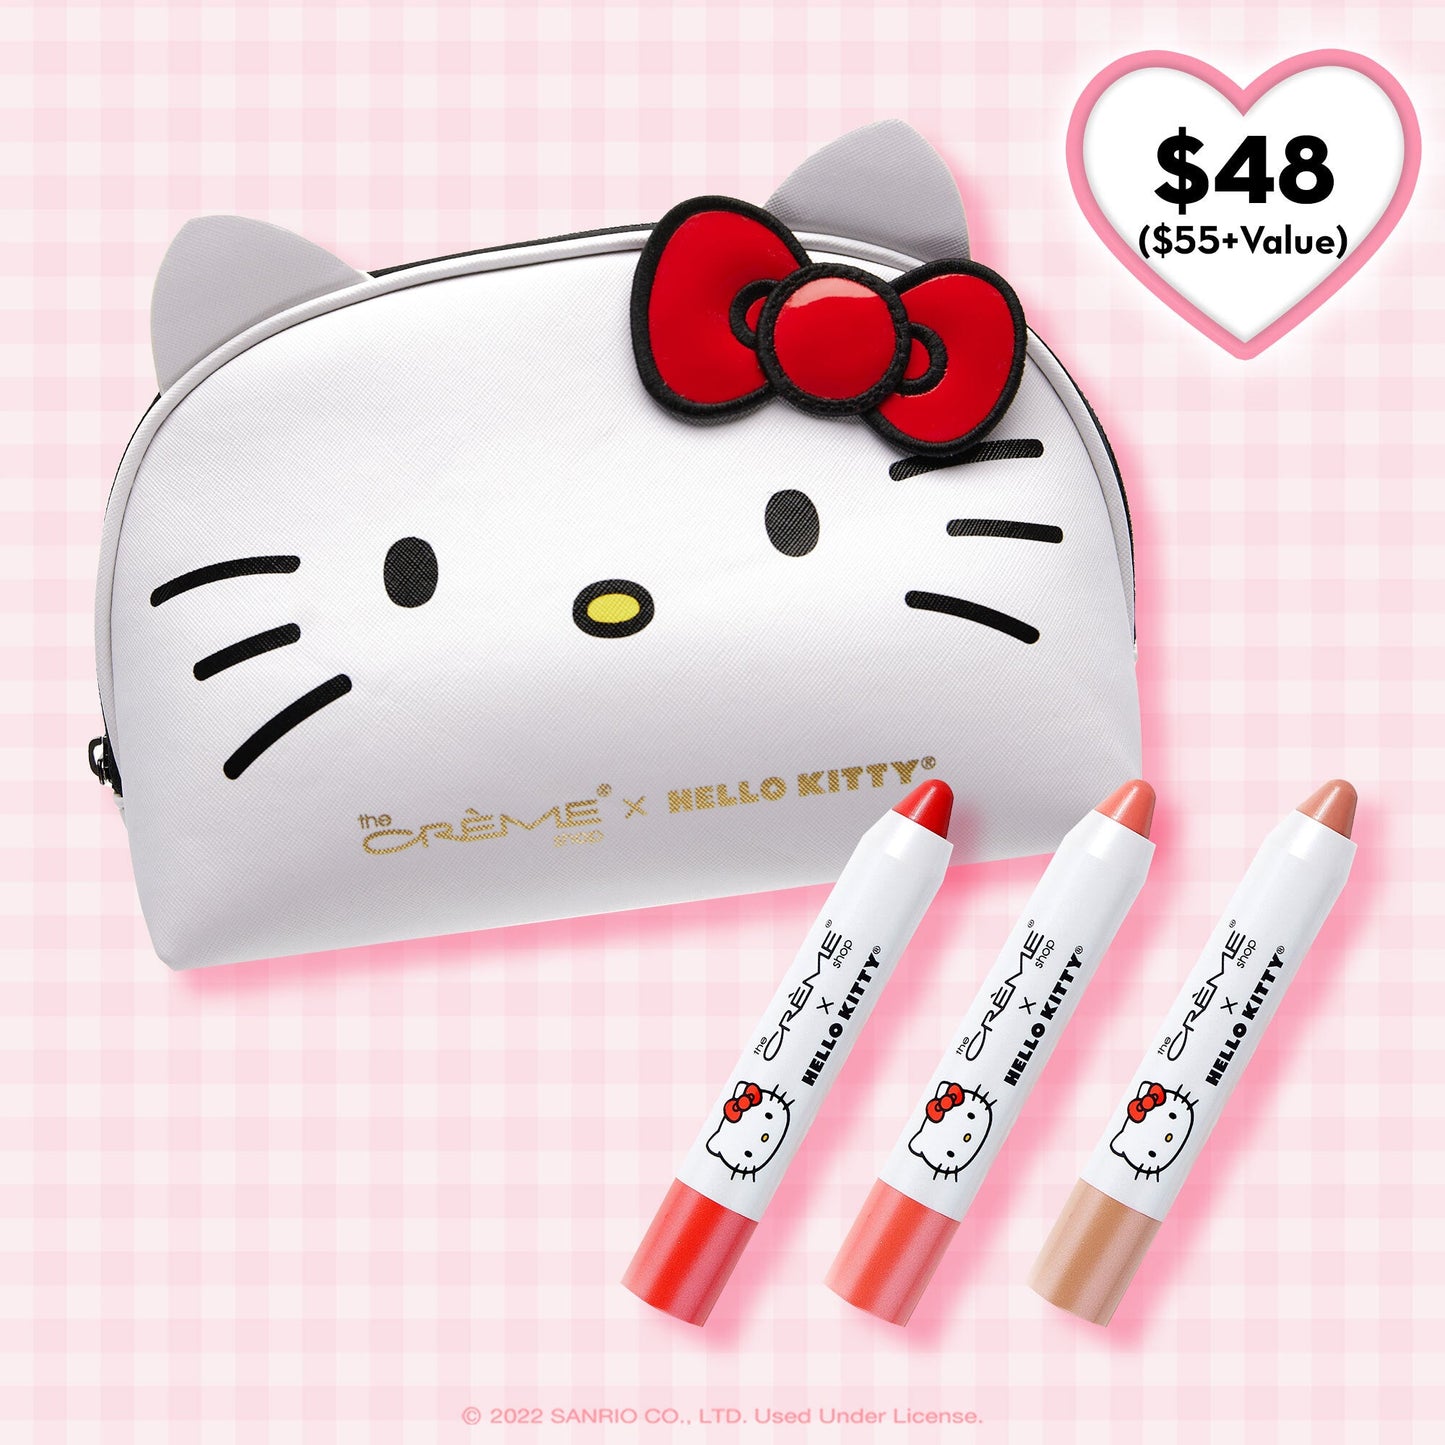 Sanrio Hello Kitty Pencils- Lot of 12 Hello Kitty and Hearts Pencils